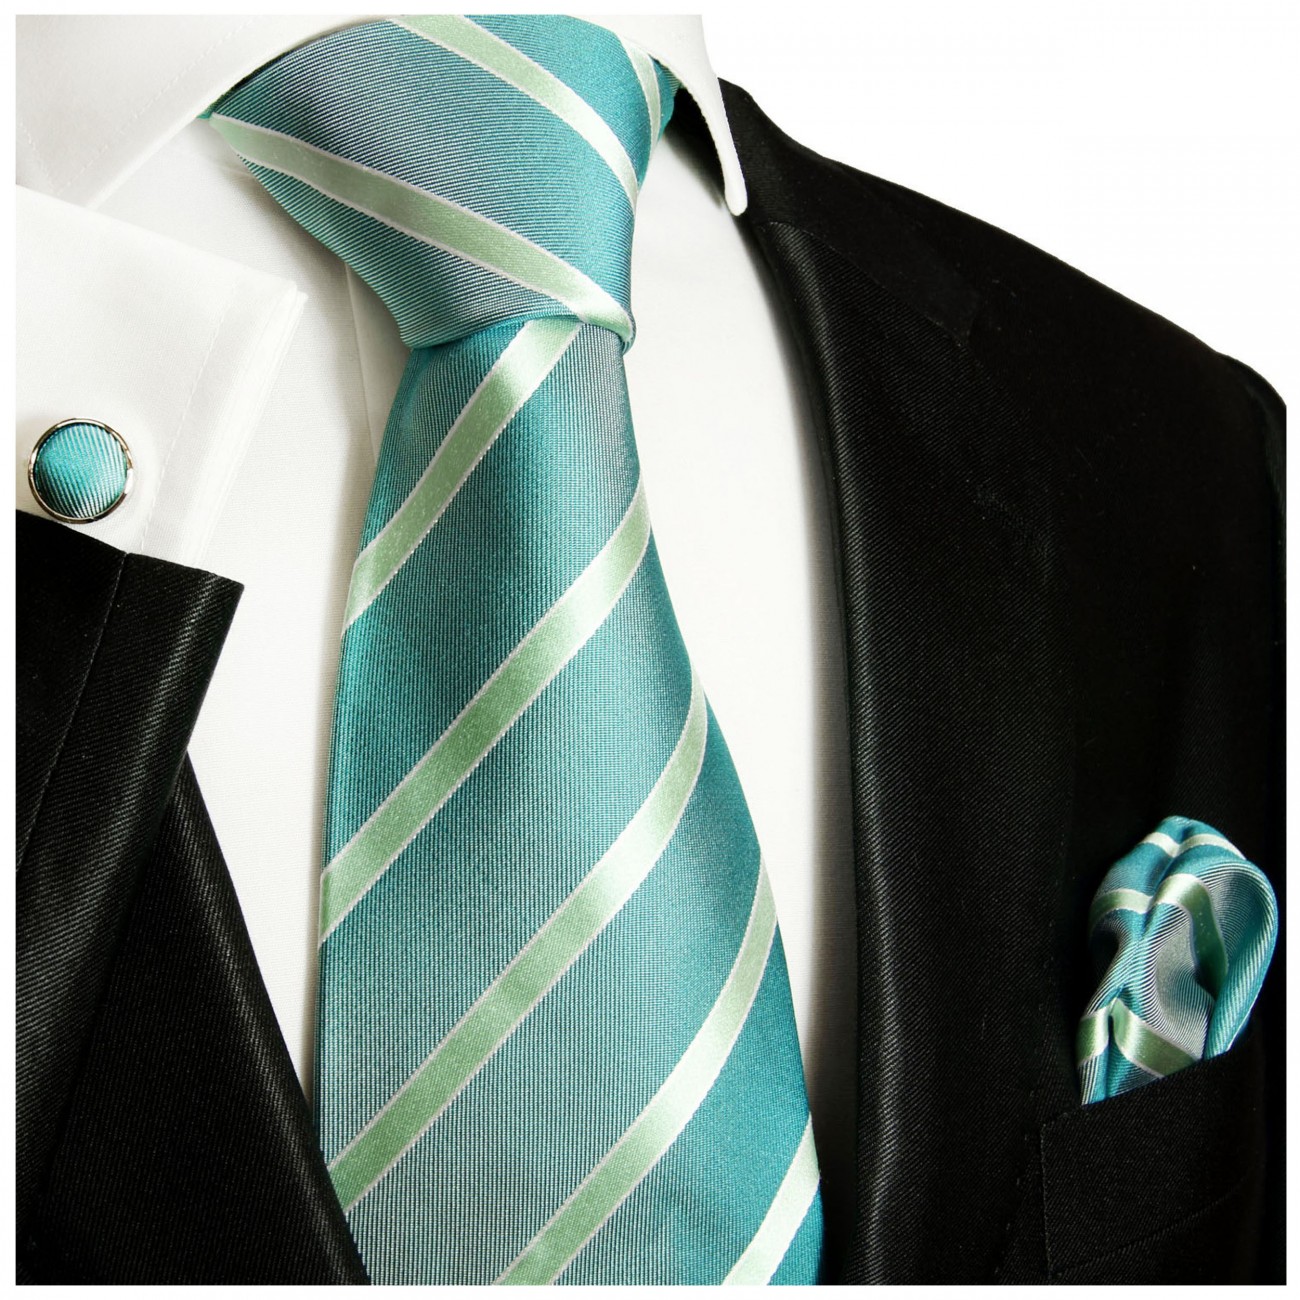 Krawatte türkis grün gestreift mit Einstecktuch und Manschettenknöpfe Seide 715